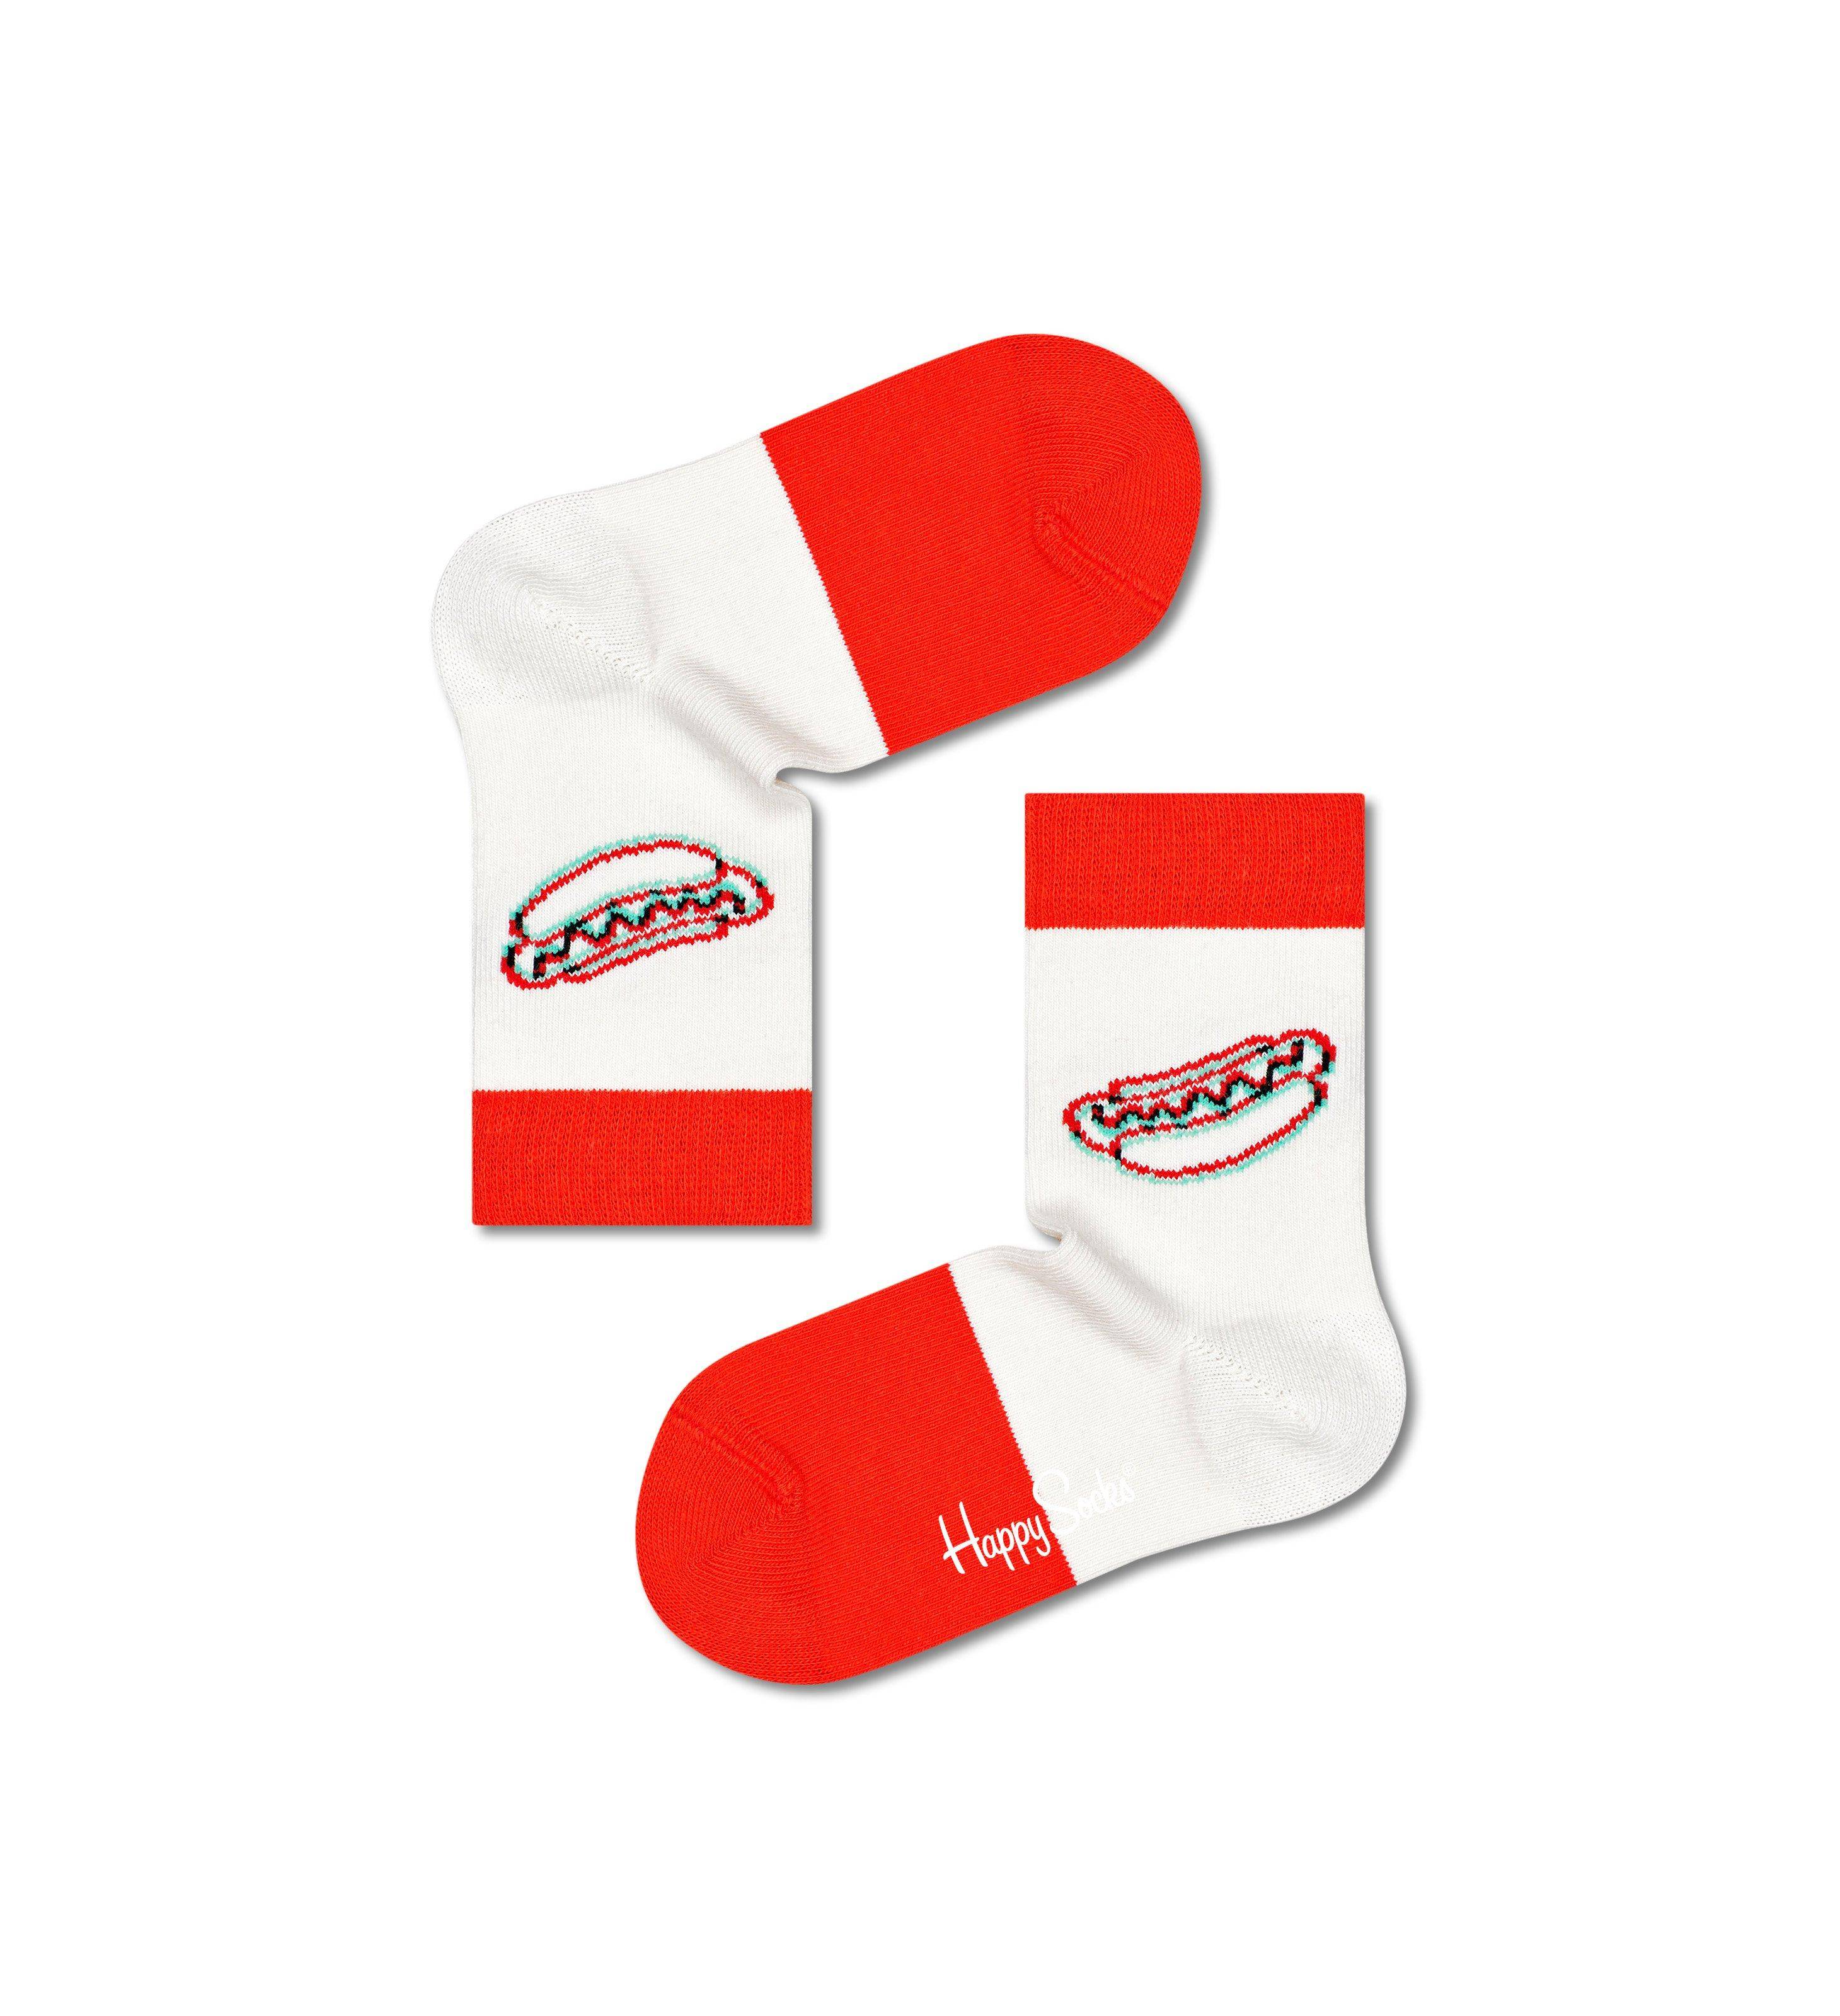 Носки Happy socks Kids 3D Hotdog Sock KHTD01 1300, размер 20 - фото 2